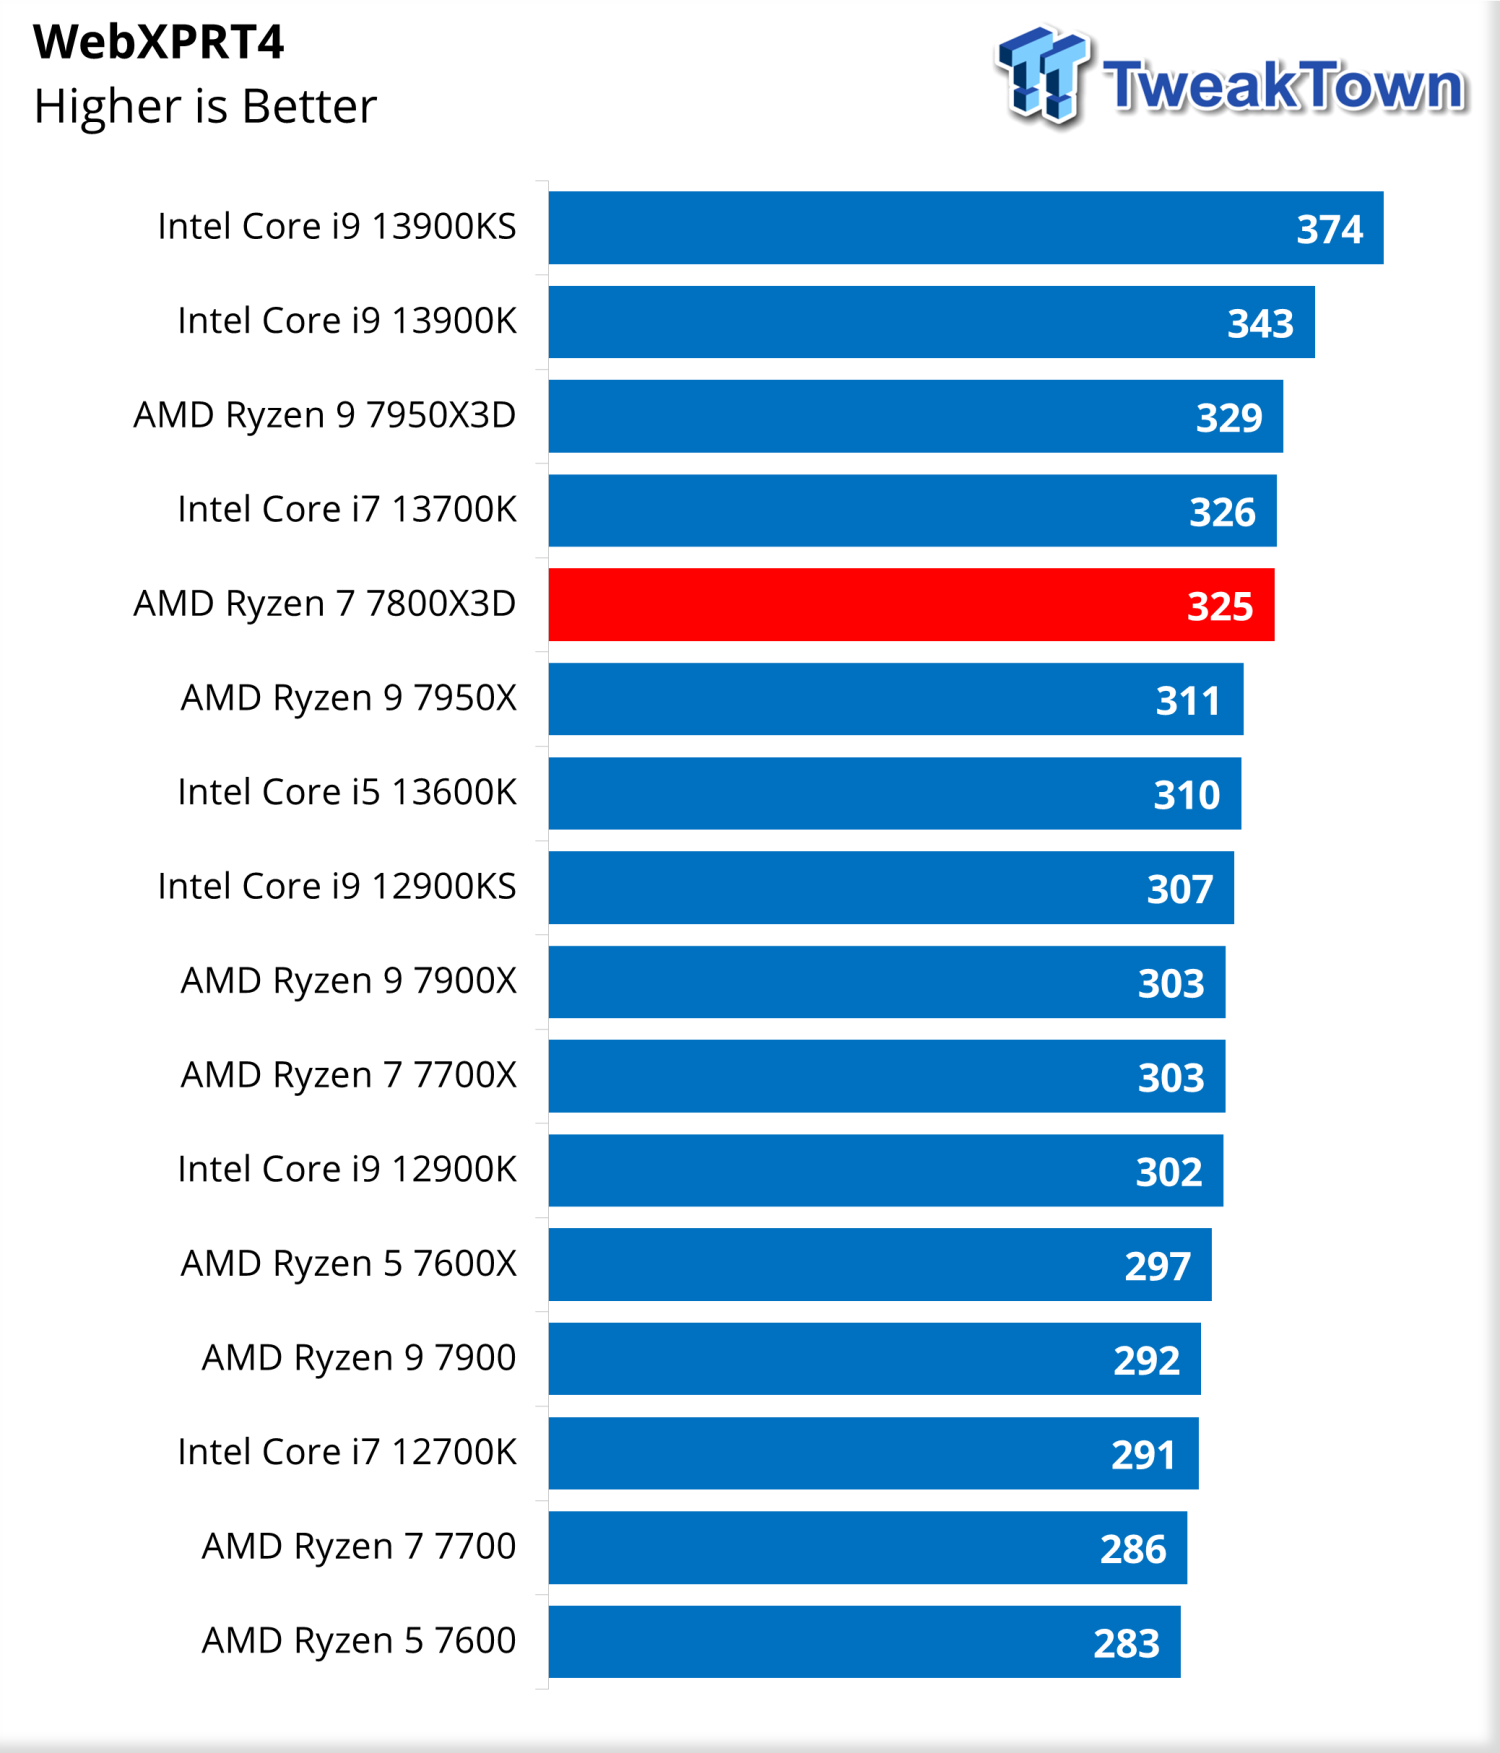 AMD Ryzen 7 7800X3D Review - The Best Gaming CPU - Core Parking Fail